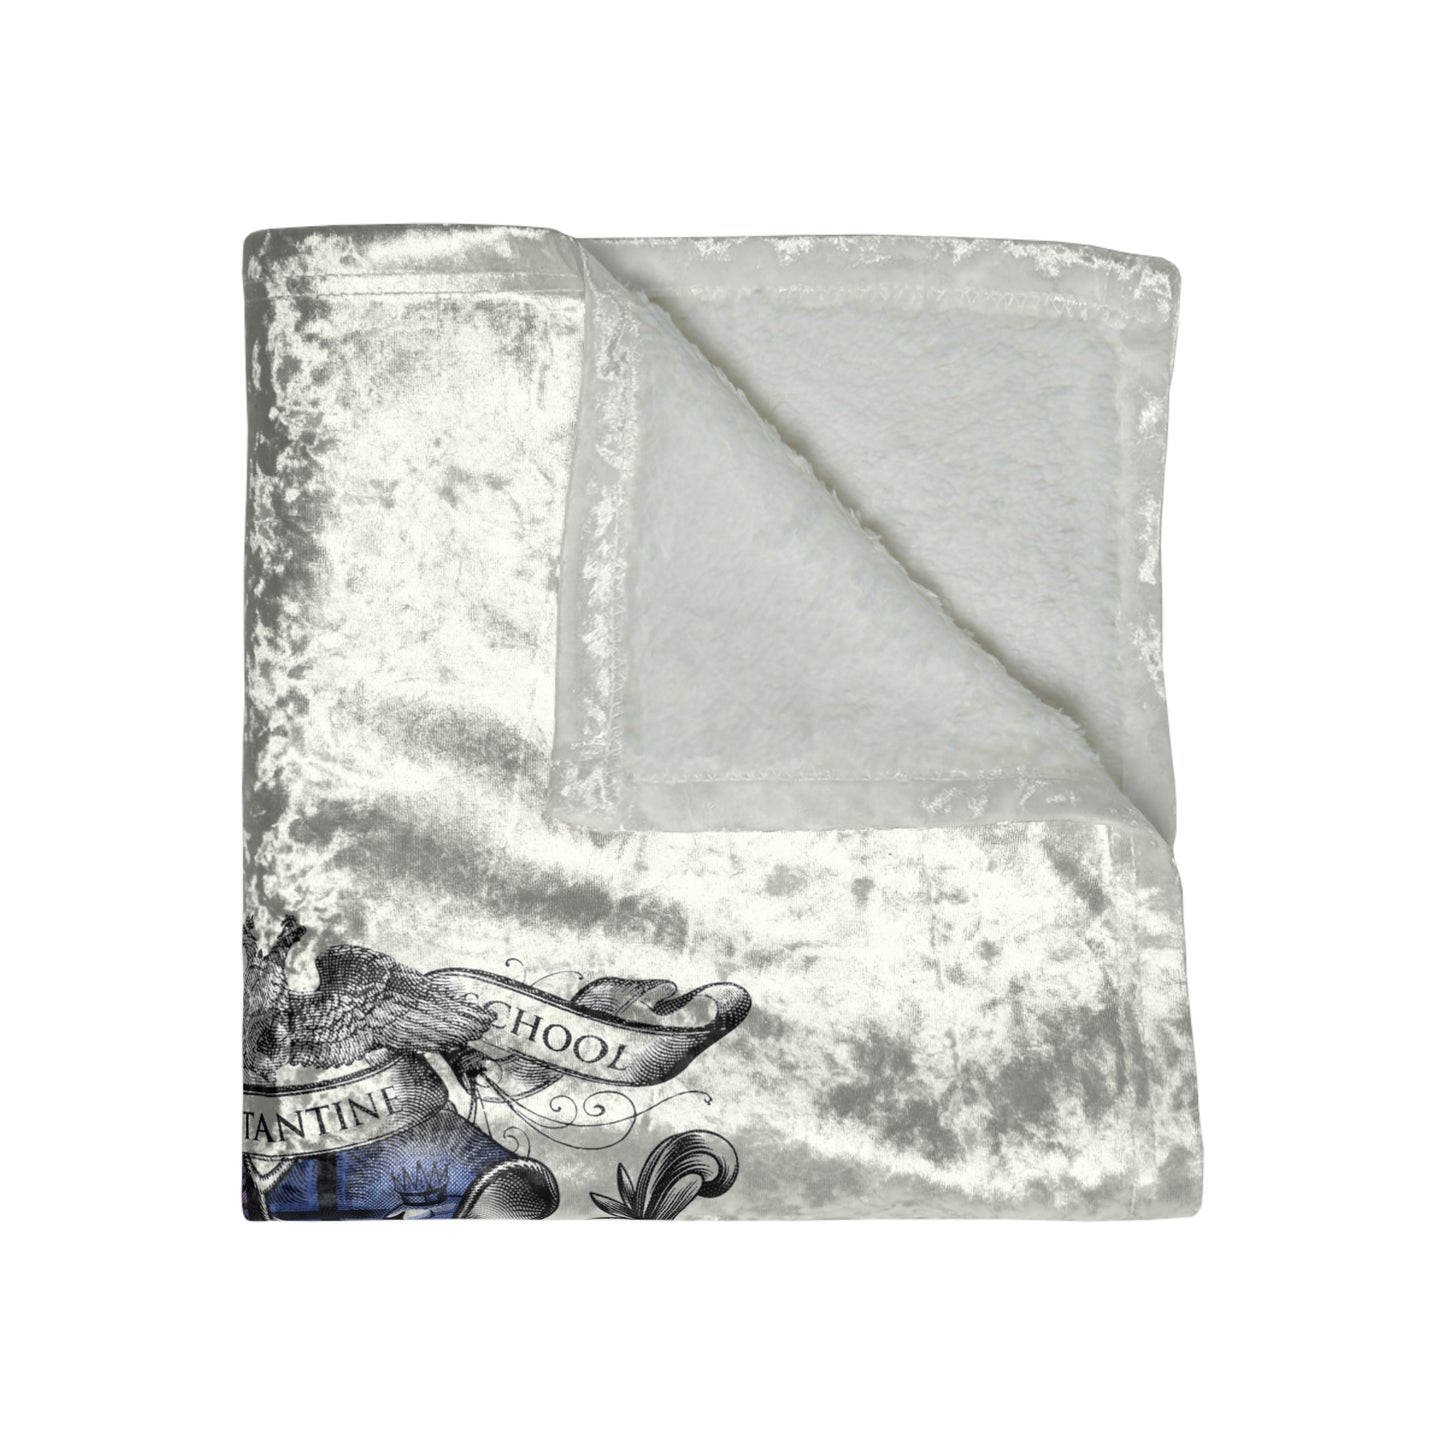 4-House Crest Crushed Velvet Blanket